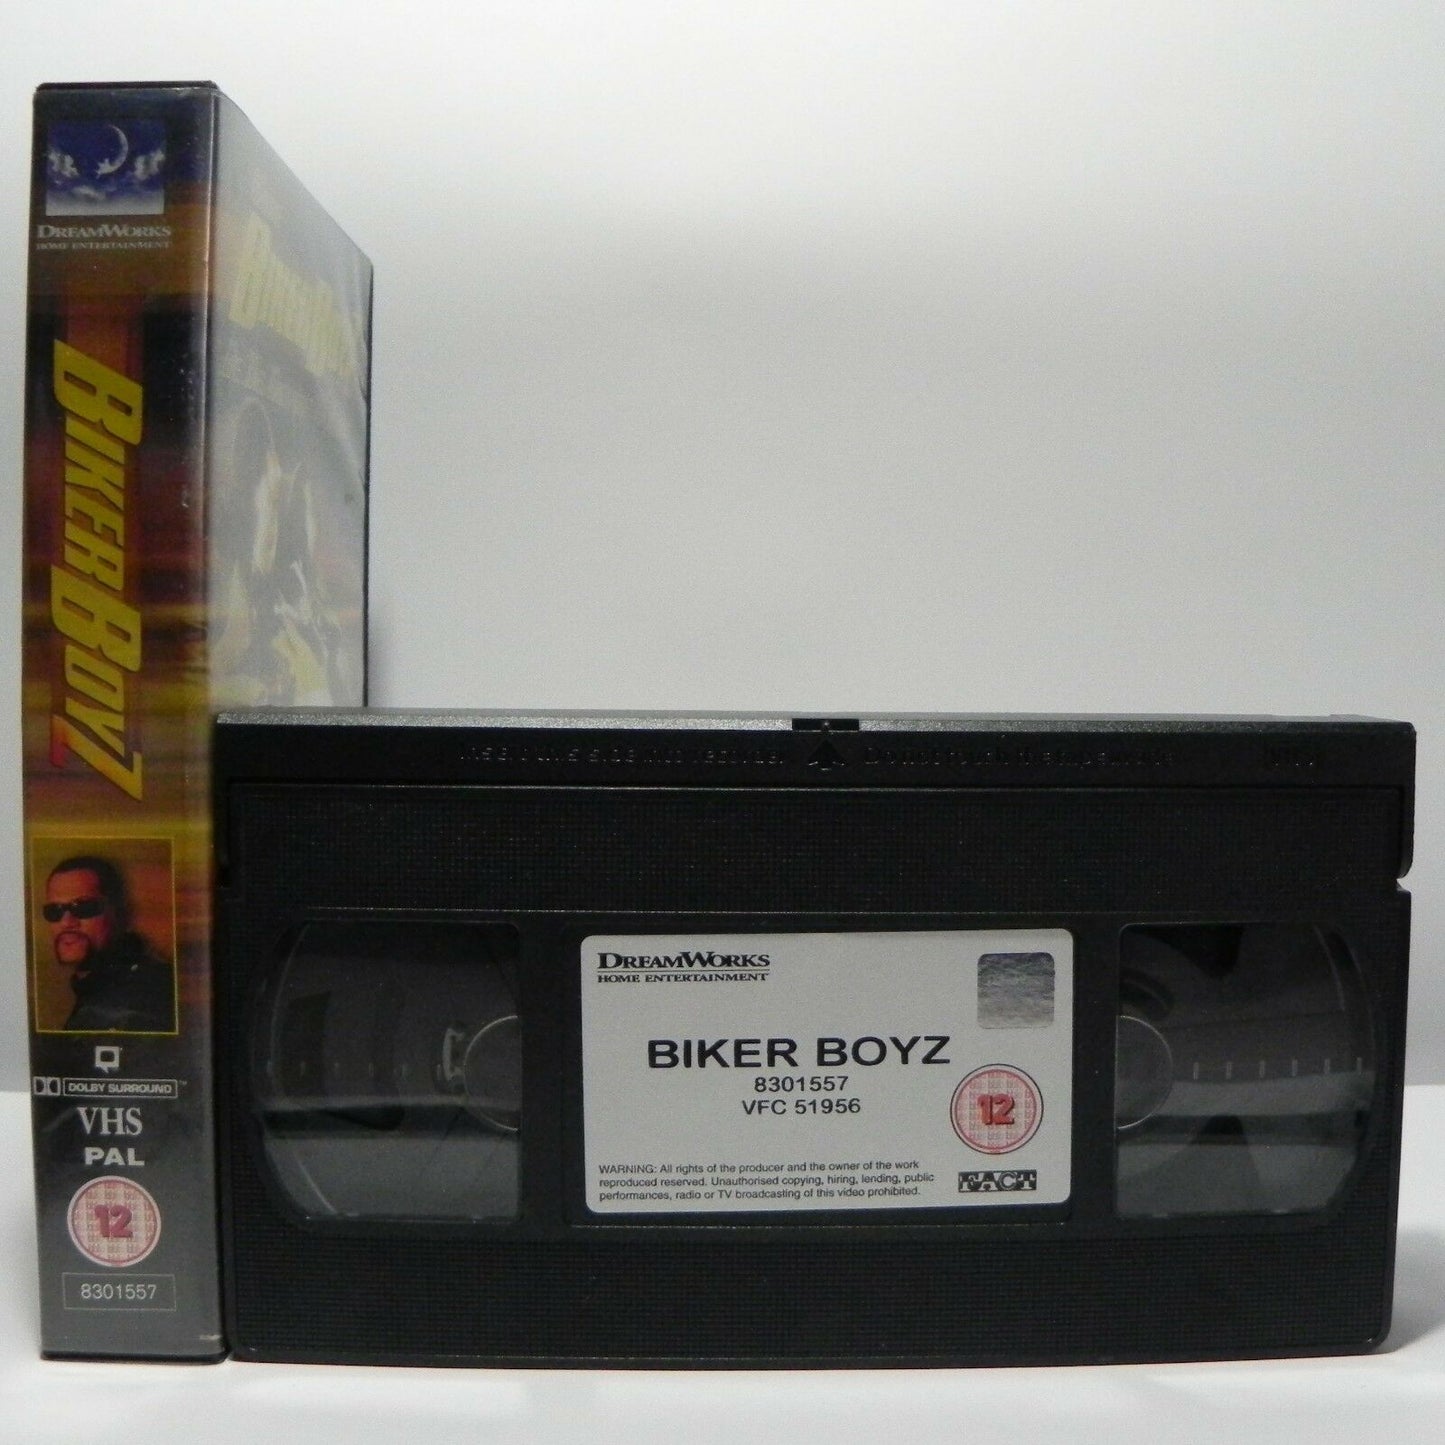 Biker Boyz: Survival Of The Fastest - Action/Adventure - L.Fishburne - Pal VHS-